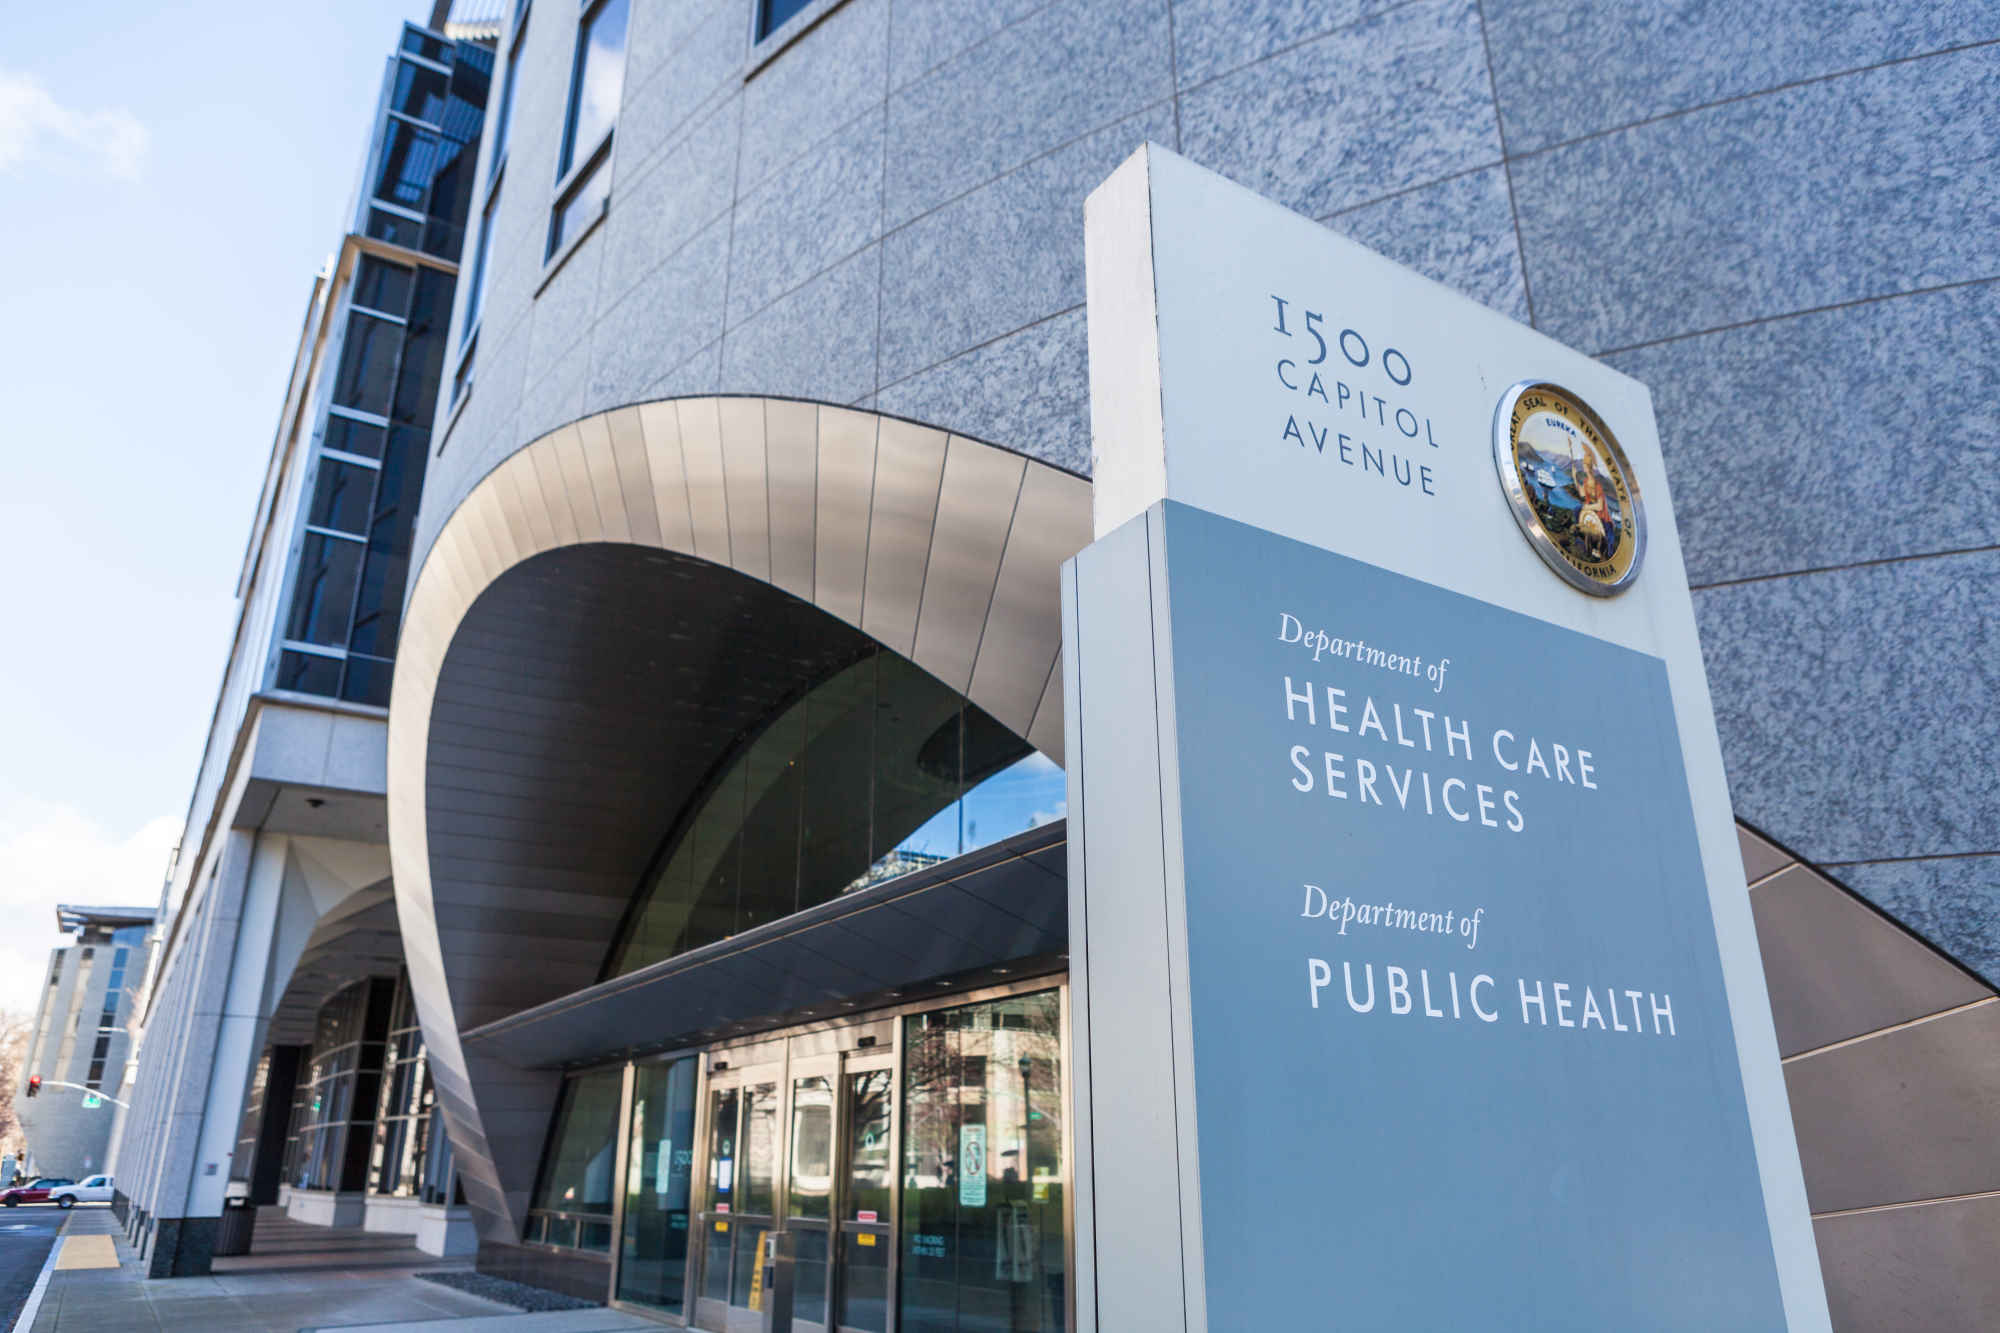 Department of Public Health building exterior